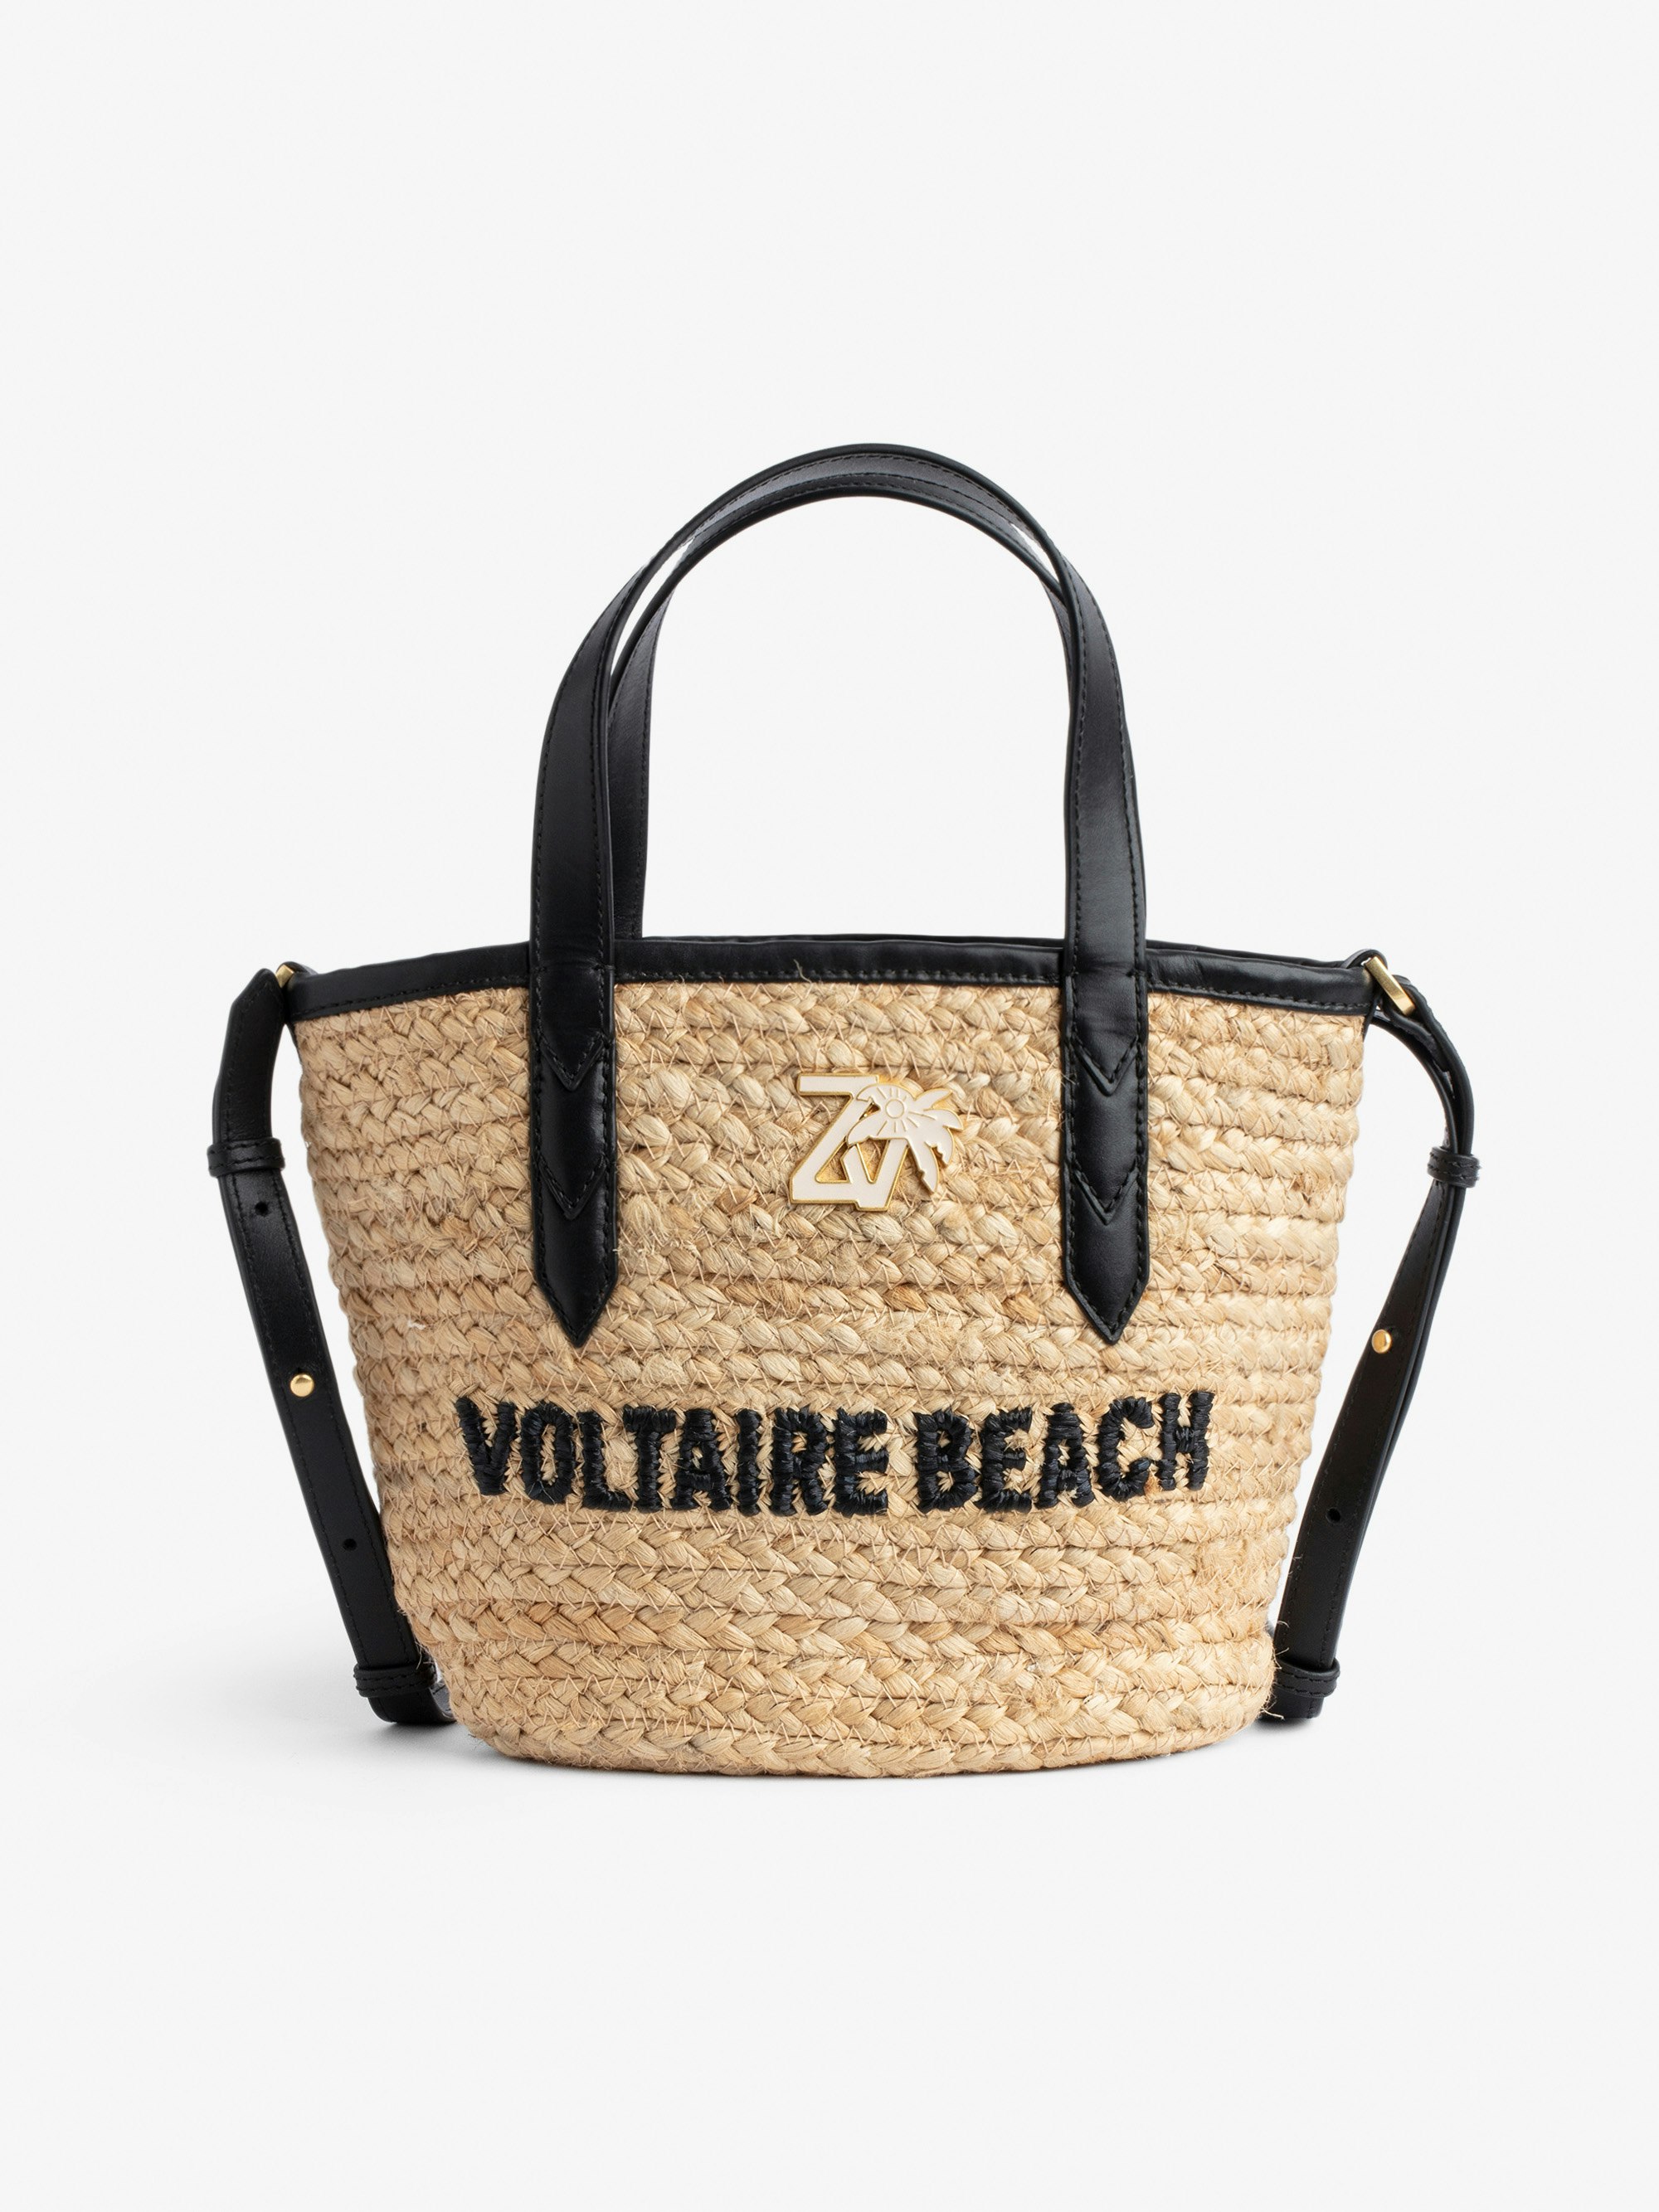 Tasche Le Baby Beach Bag - Damen-Strohtasche mit Schulterriemen aus schwarzem Leder, „Voltaire Beach“-Stickerei und ZV-Charm